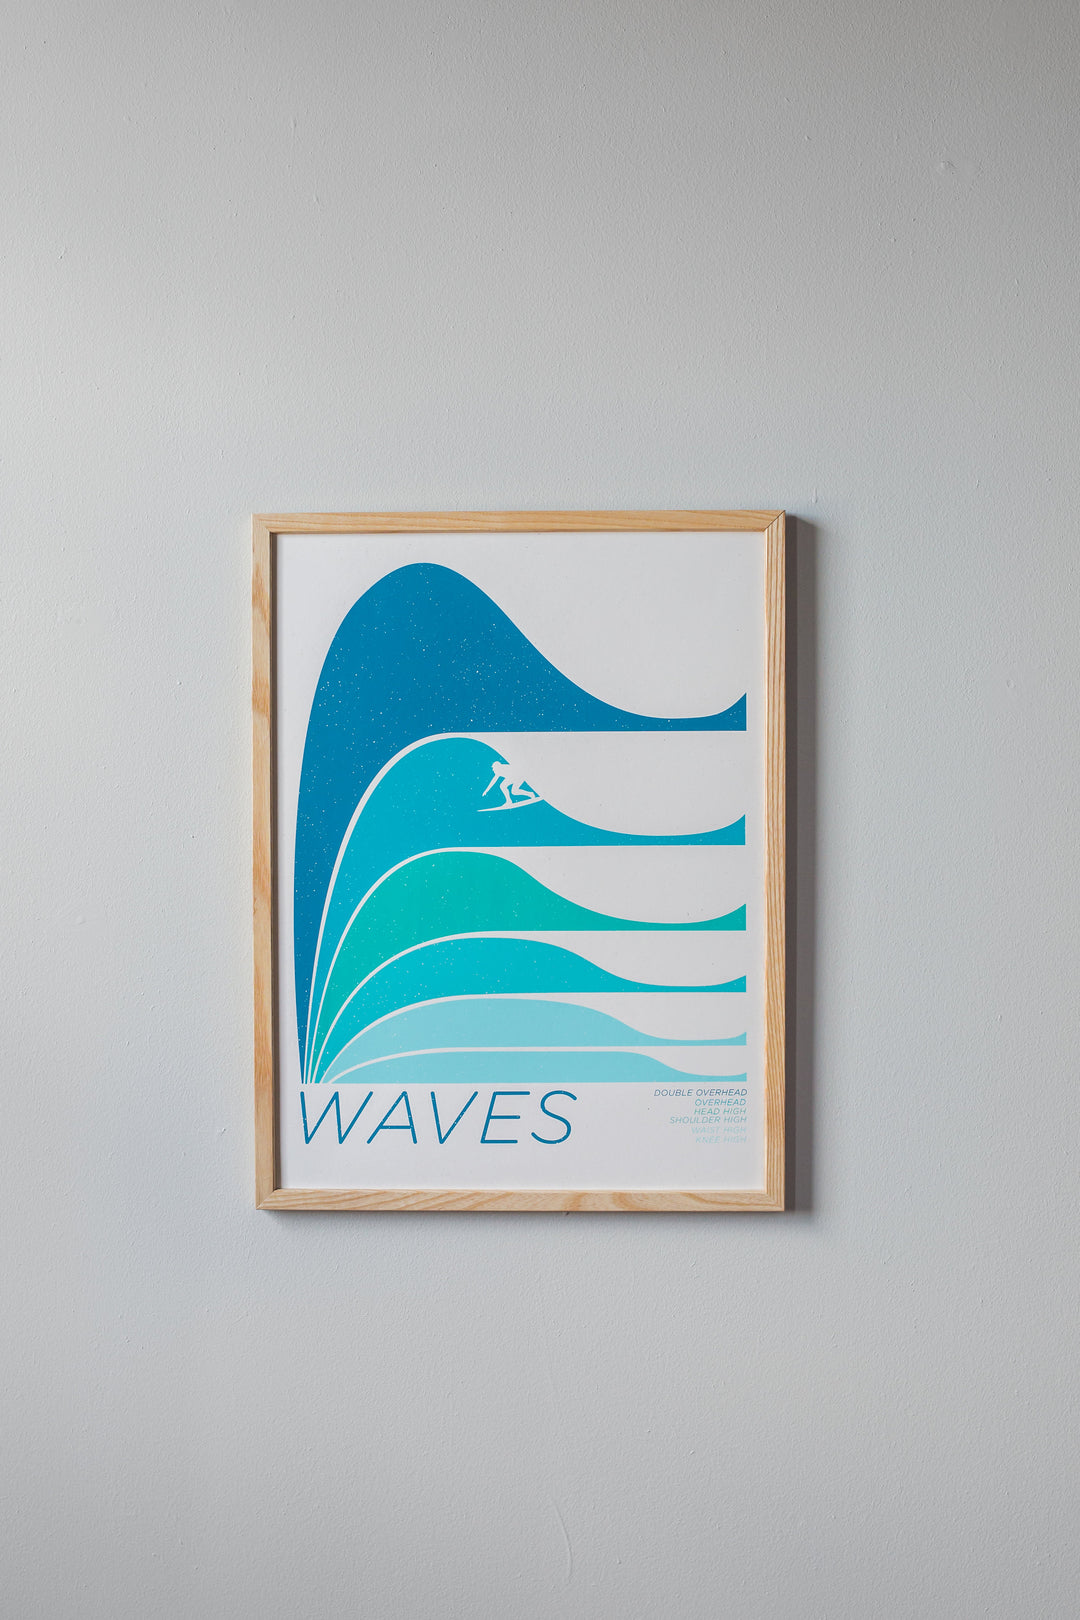 Waves Print by Brainstorm